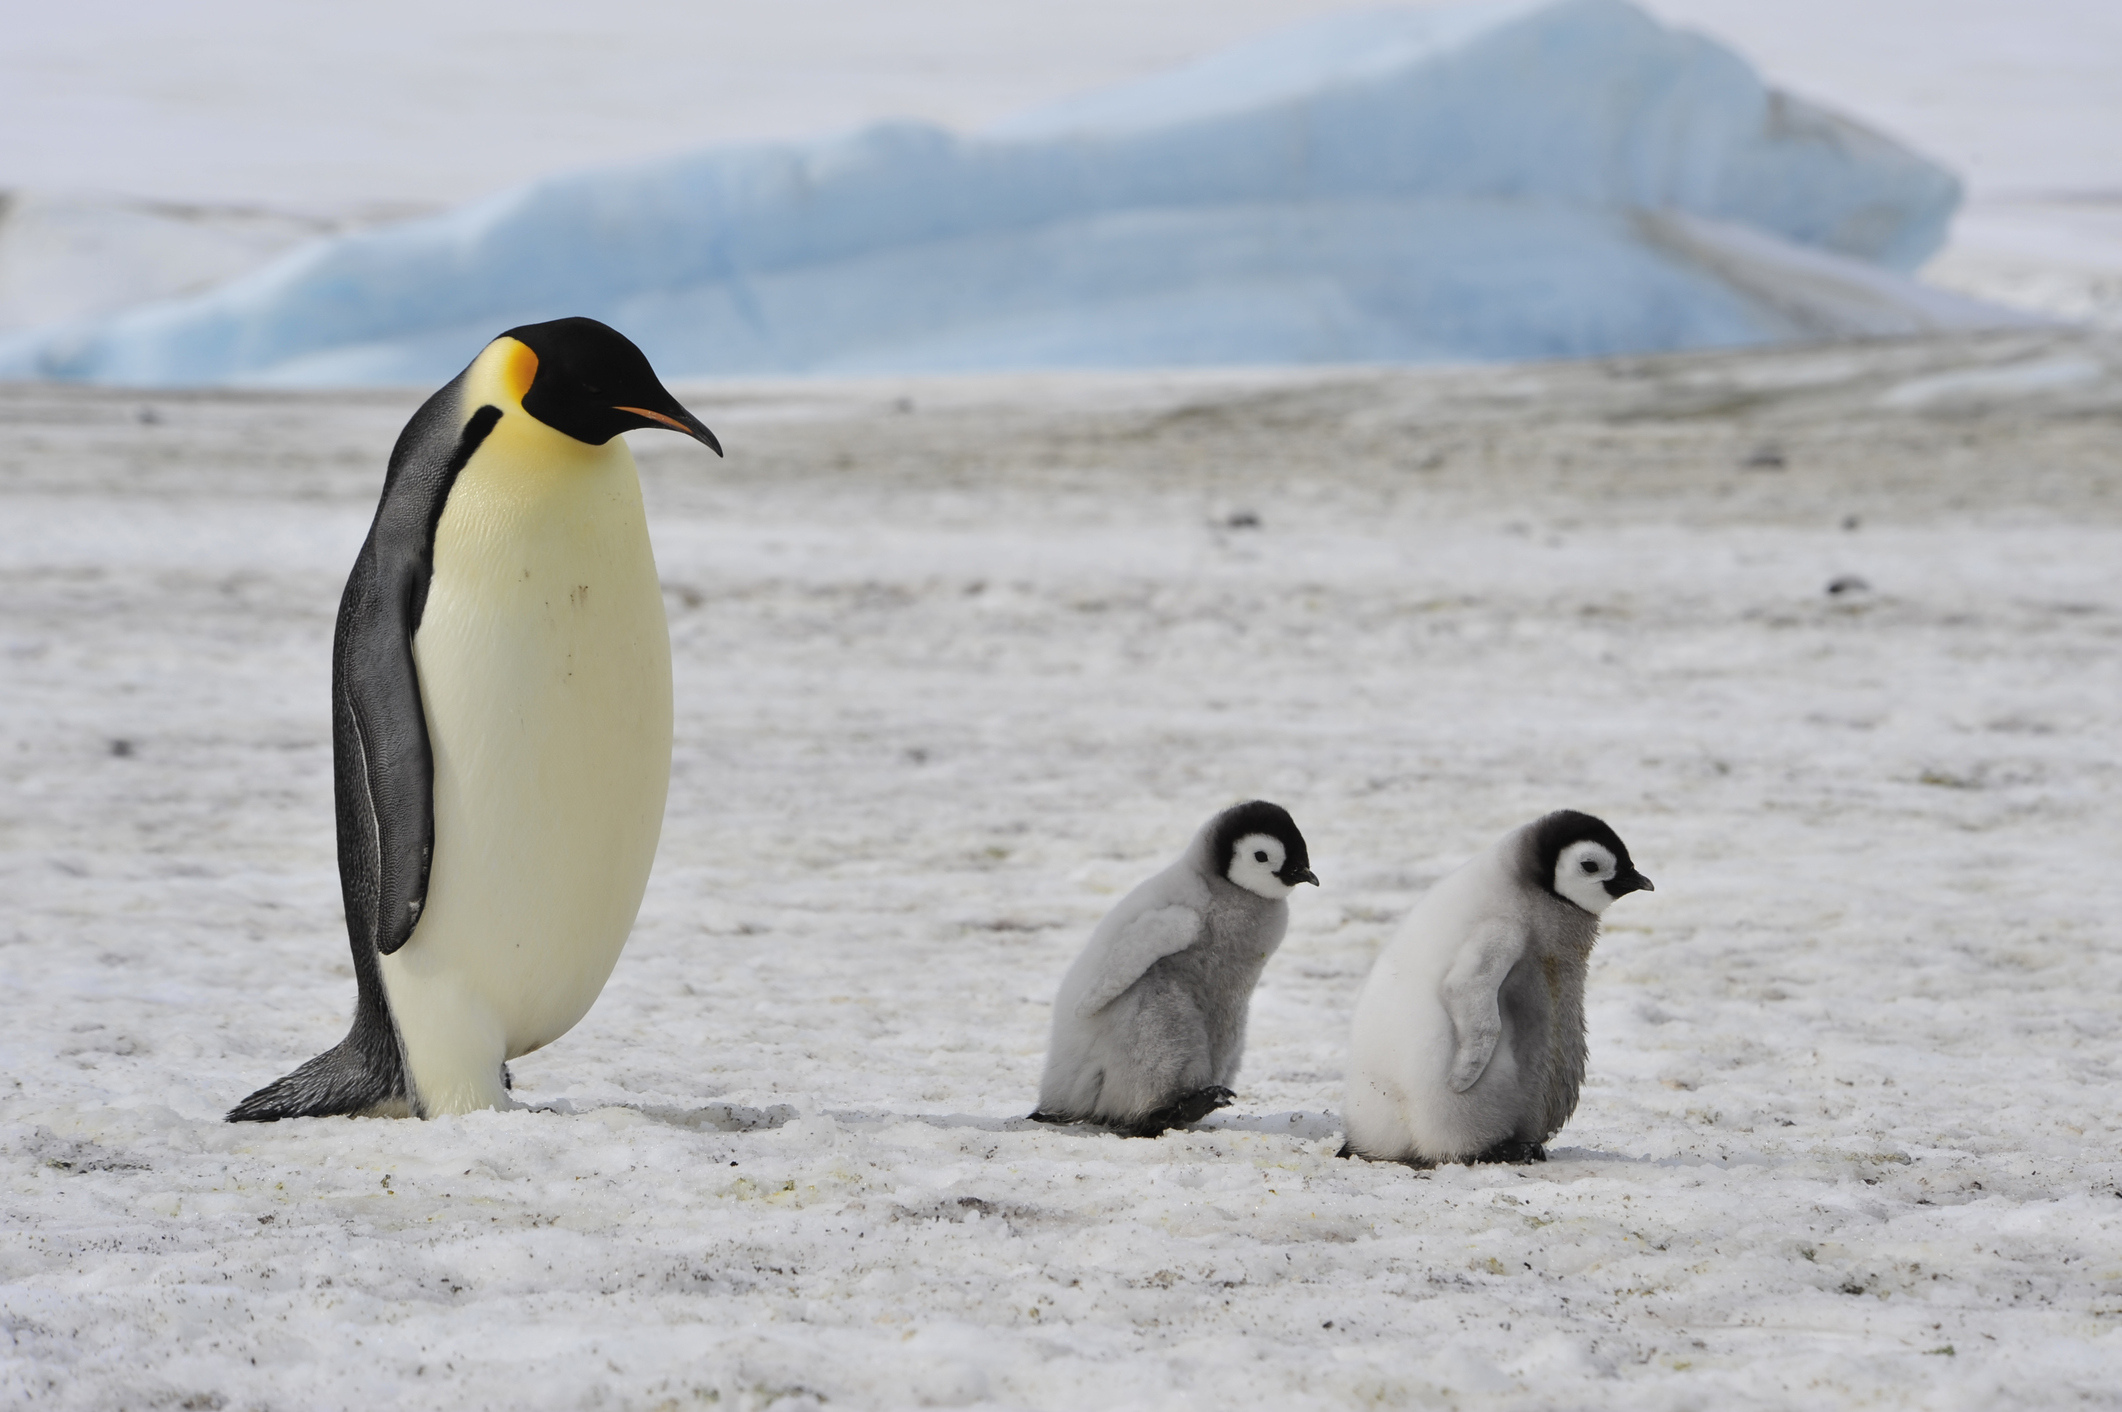 Penguins : Madagascar Penguins PNG Image - PurePNG | Free transparent ...